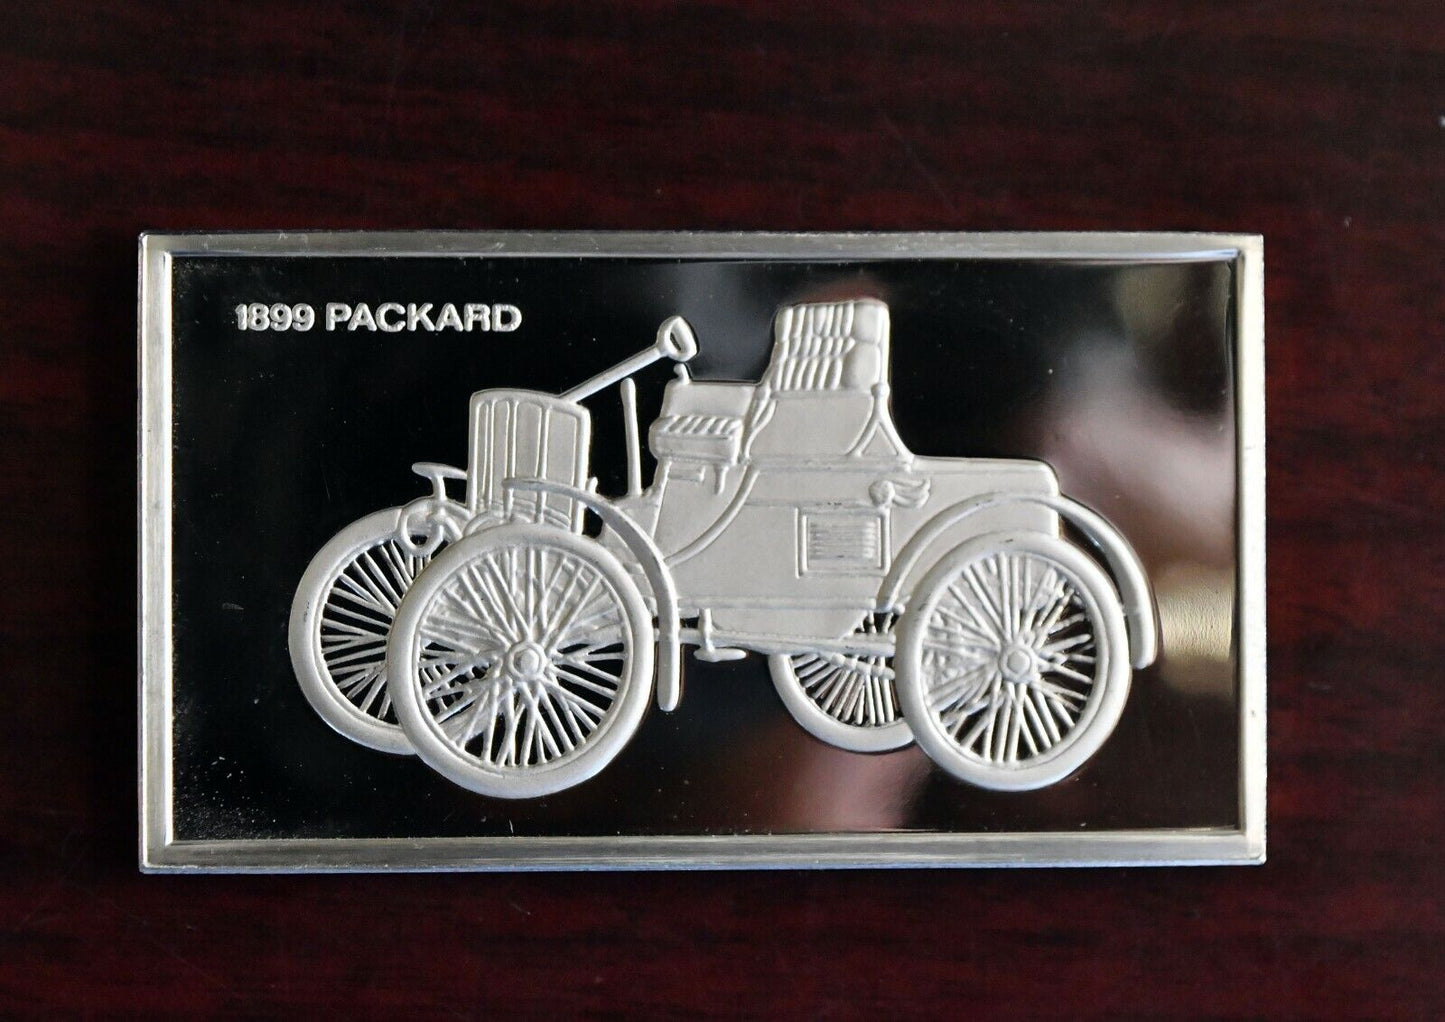 1899 Packard Centennial Car Ingot Collection 1000 Grain Sterling Franklin Mint